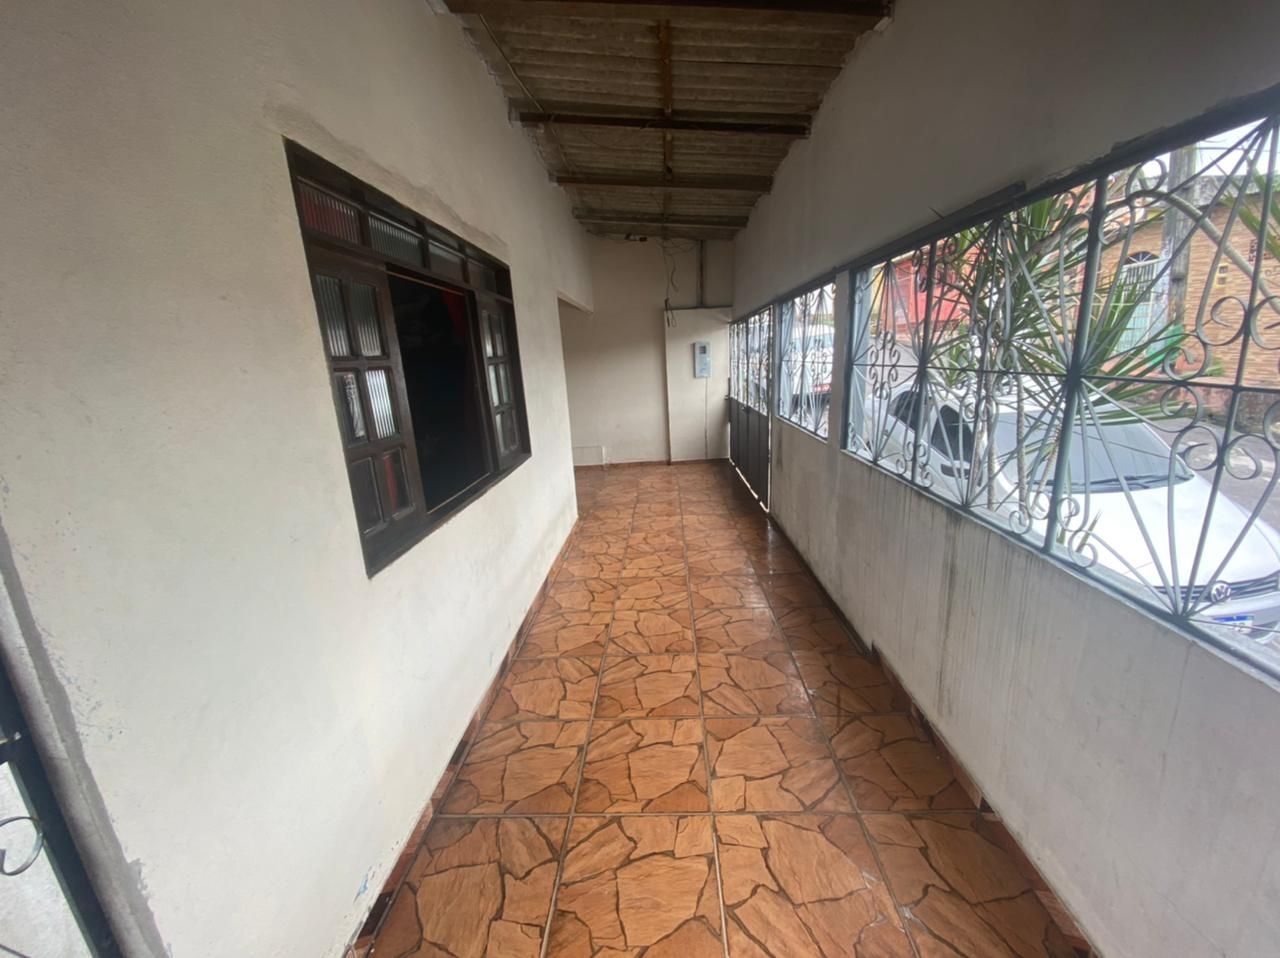 Casa com 3 dormitórios à venda, 200 m² por RS 225.000 - Novo Aleixo - Manaus-AM